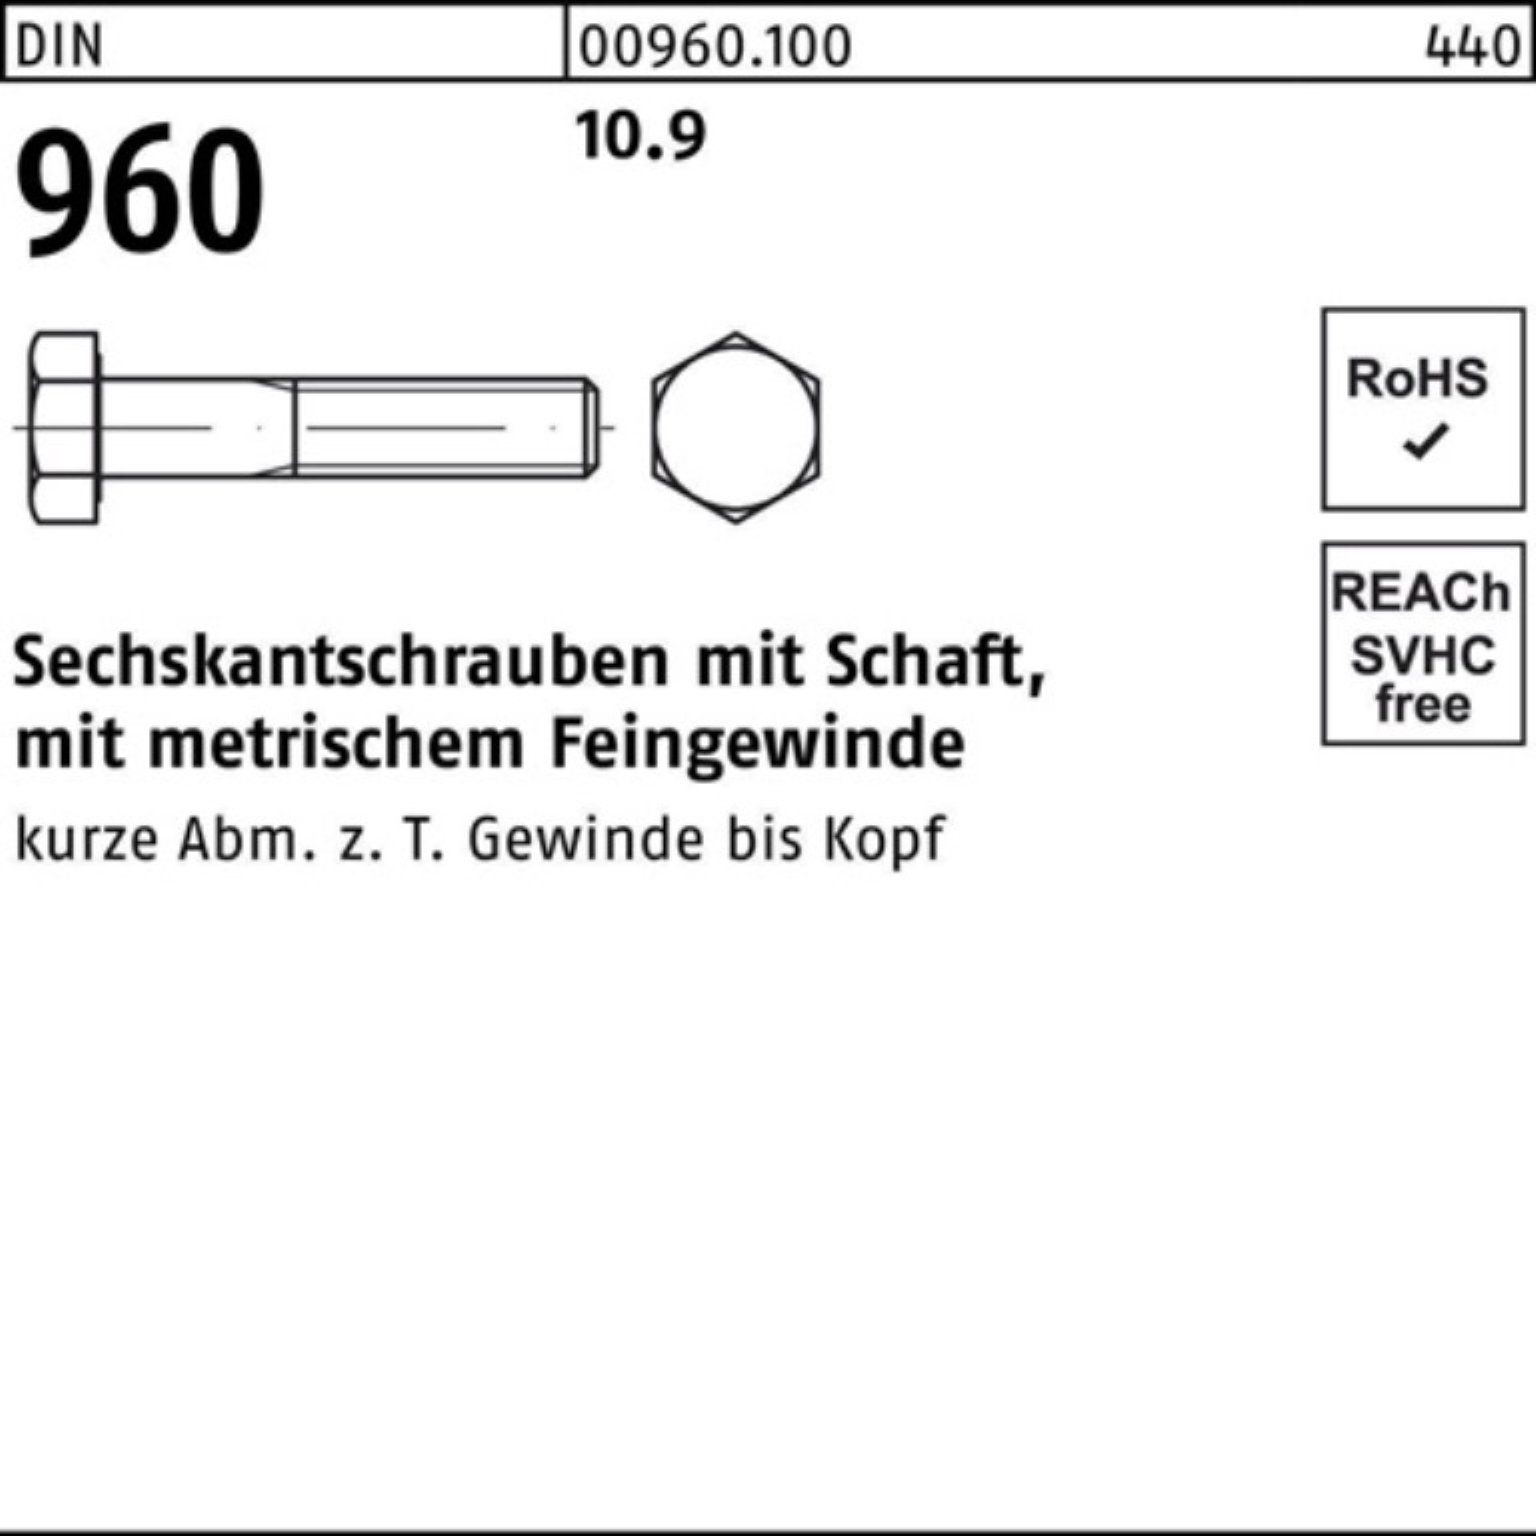 Sechskantschraube 960 Stü Schaft Reyher 100er DIN Sechskantschraube 10.9 100 Pack 60 M10x1,25x